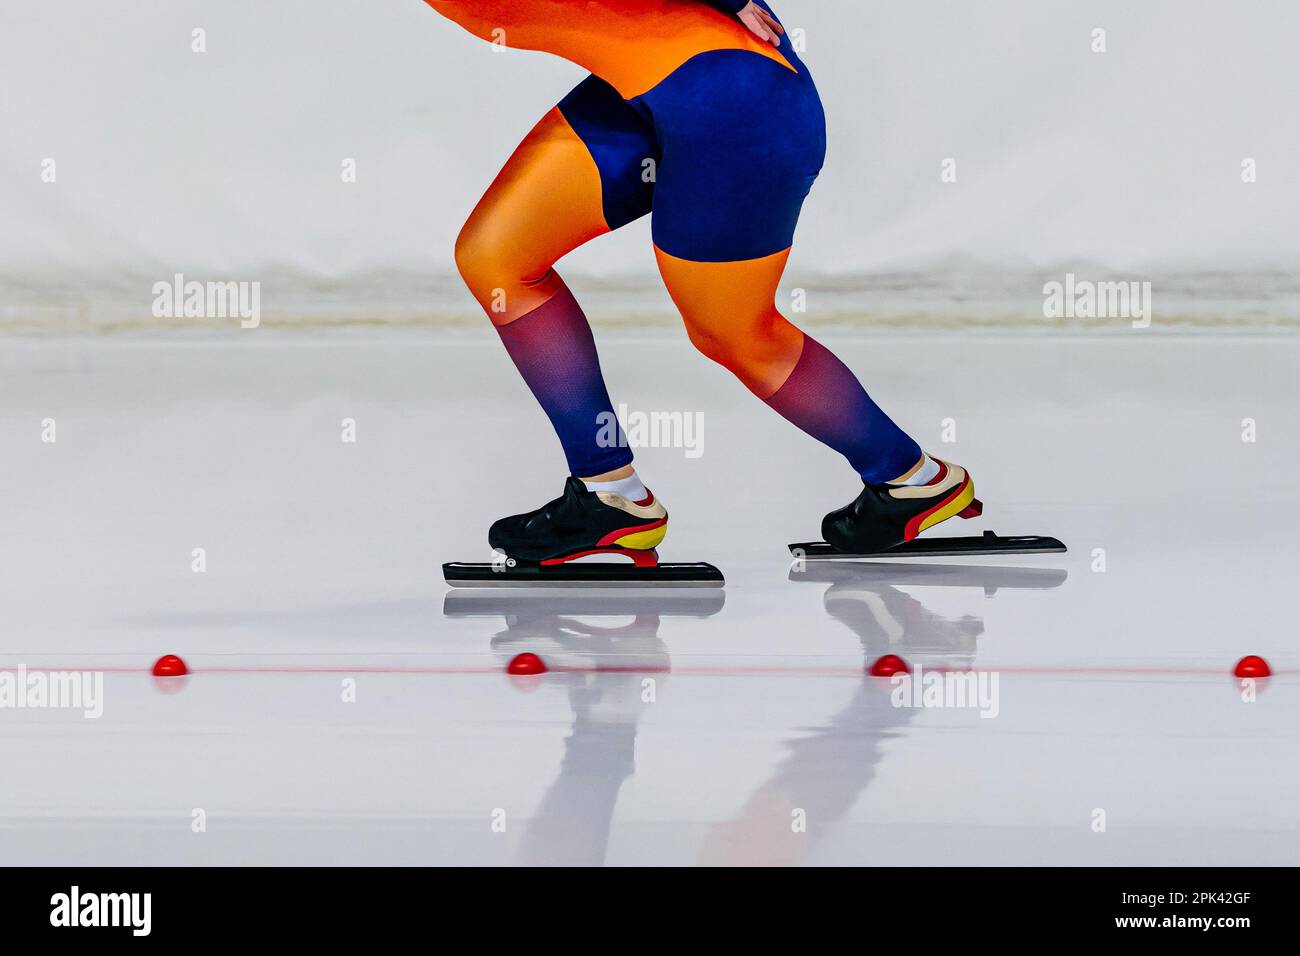 les patineuses en costume de peau vive courent dans la course de patinage de vitesse, les jeux de sports d'hiver Banque D'Images